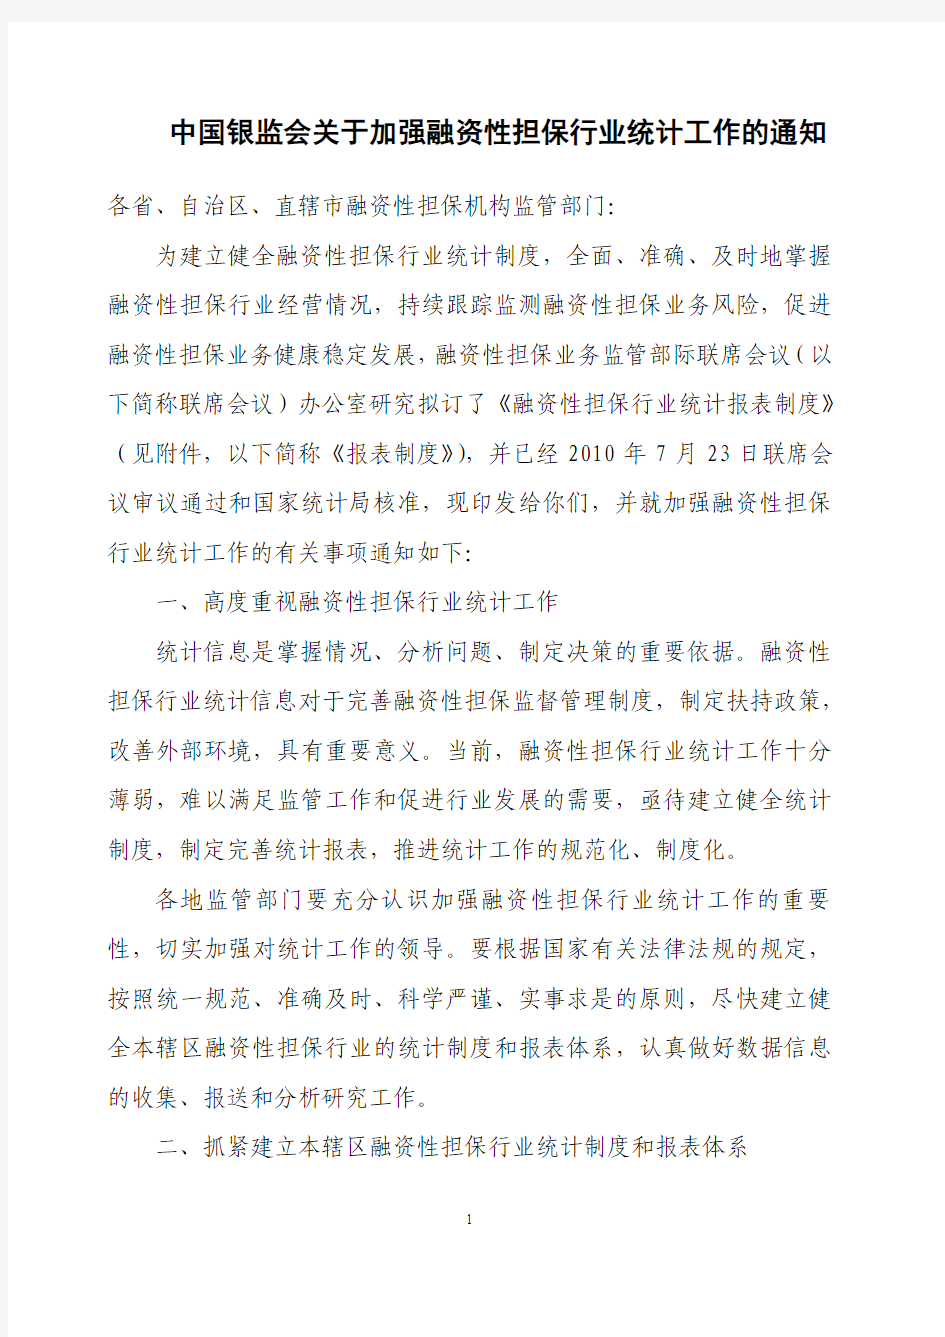 中国银监会关于加强融资性担保行业统计工作的通知